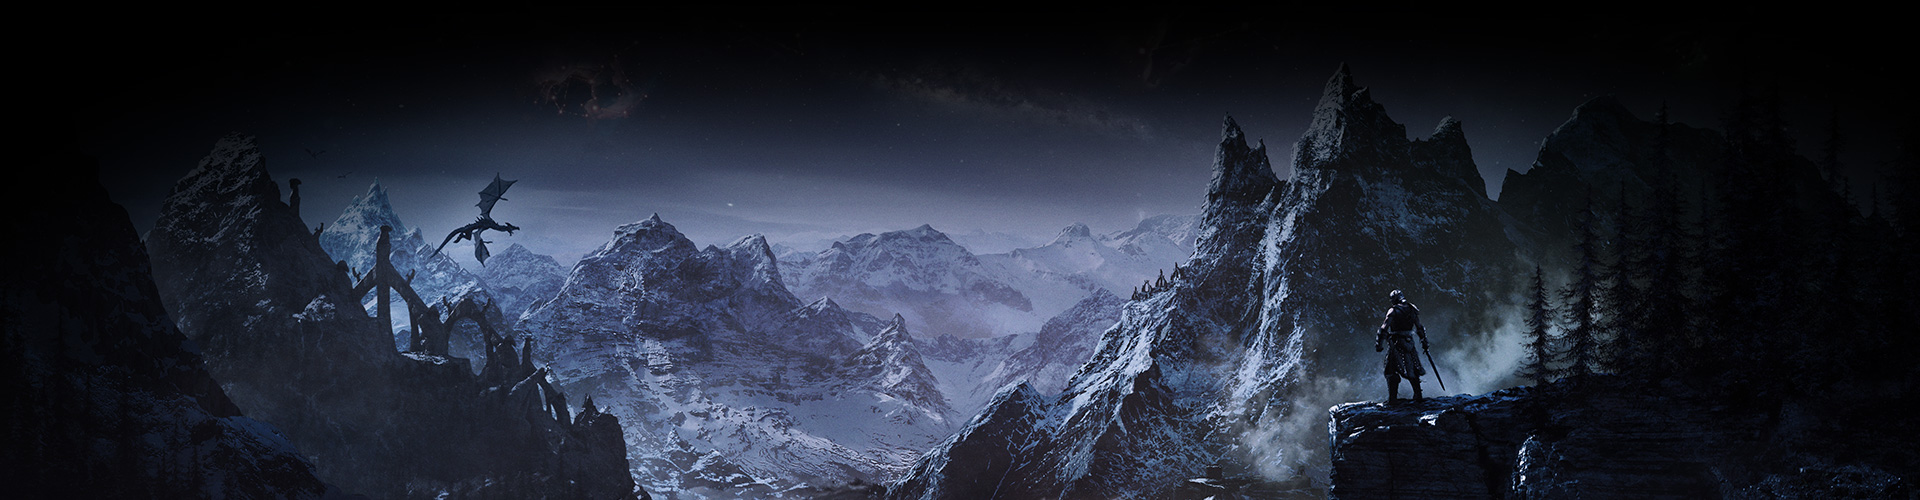 Egy karakter nézi a havas hegyek közötti völgyet, miközben egy sárkány száll el fölötte